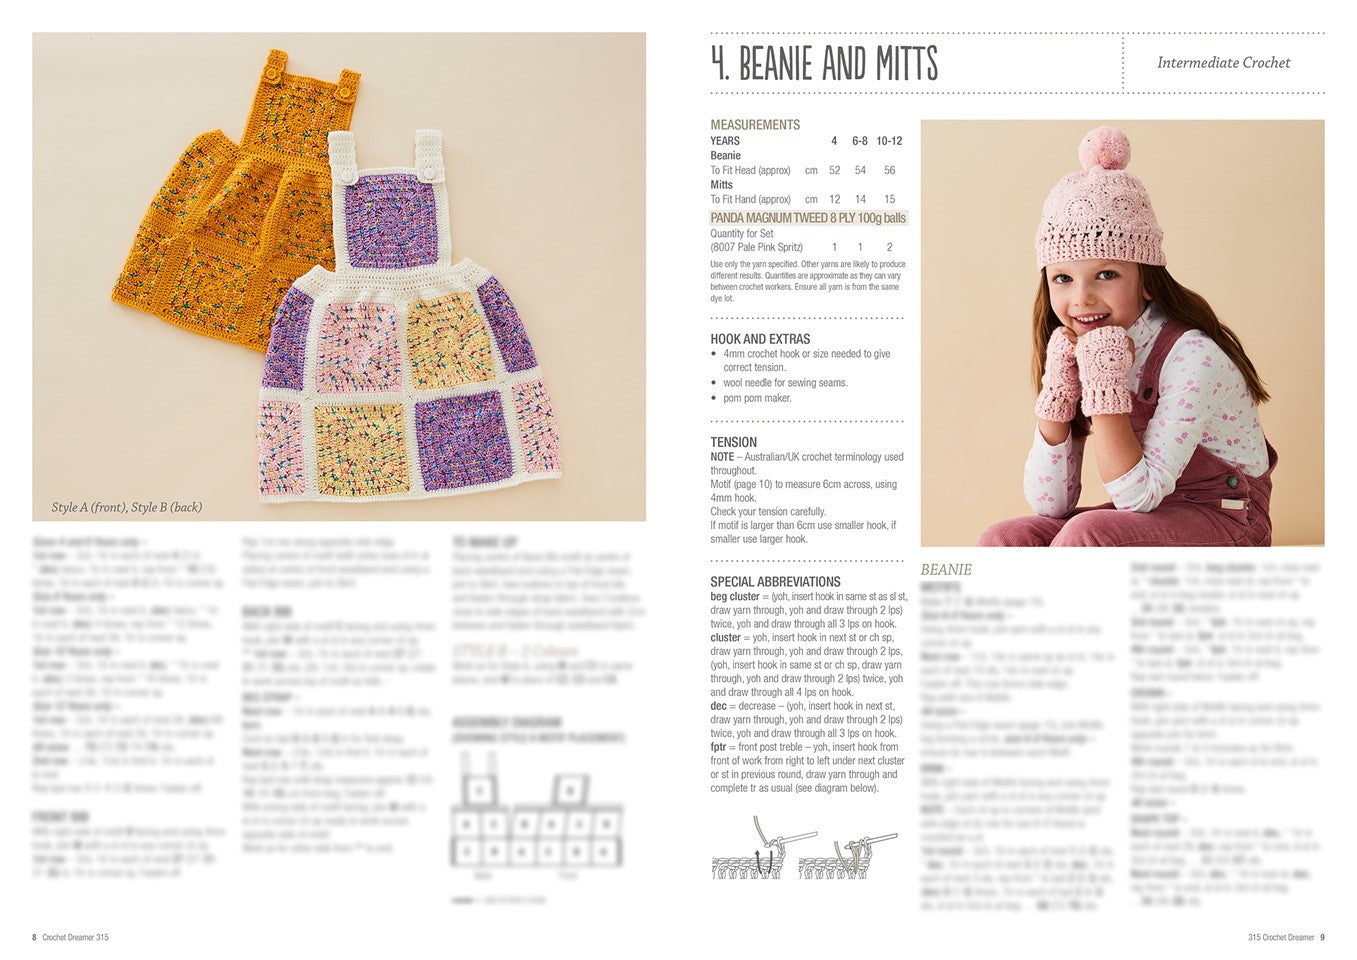 Pattern - Crochet Dreamer - PB4444-315